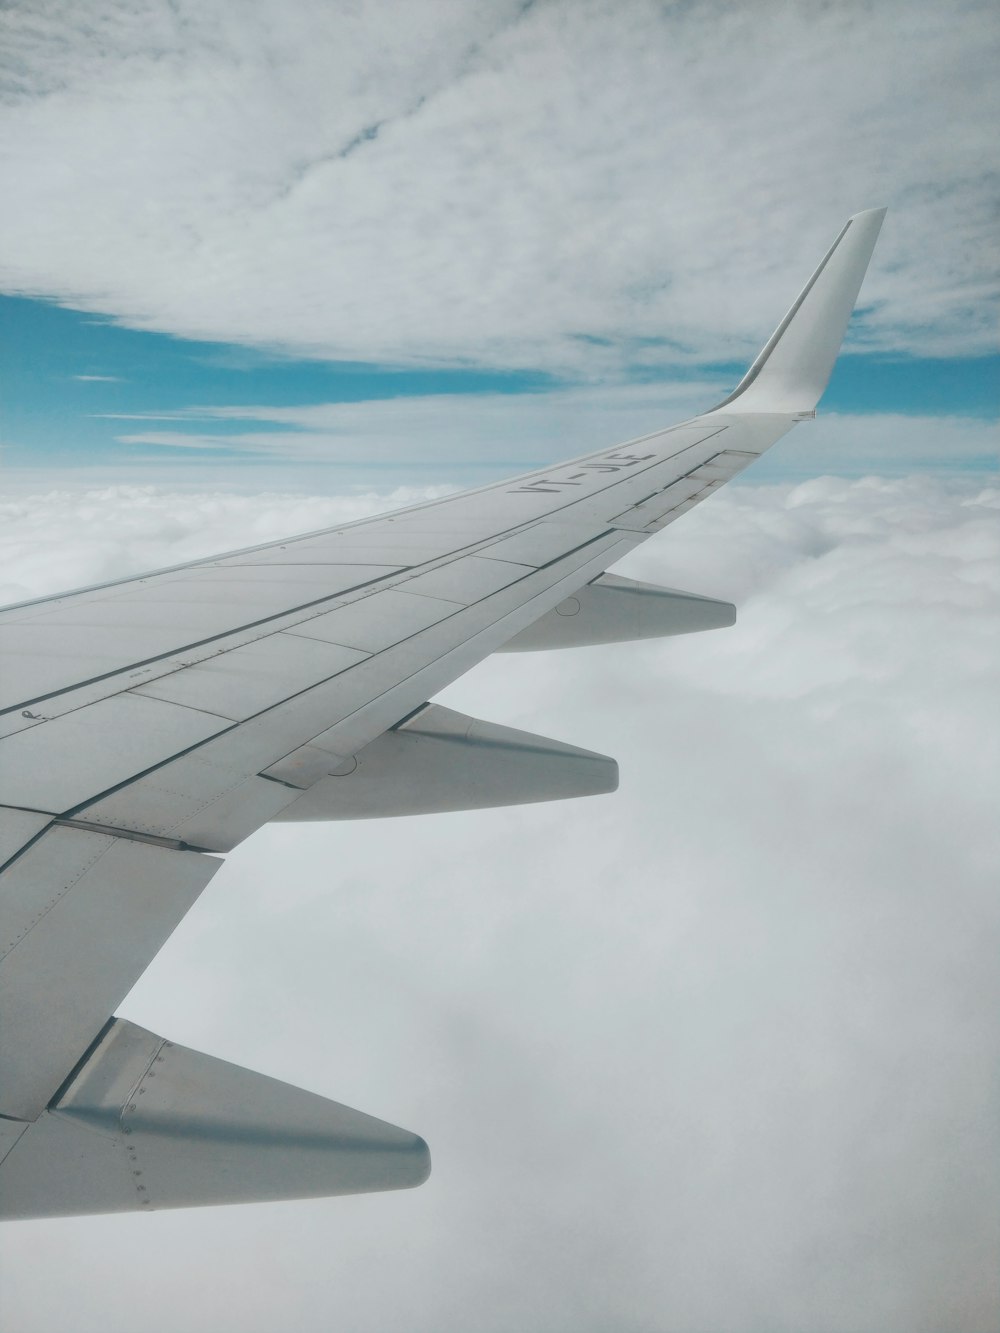 Fotografía aérea del ala del avión y las nubes